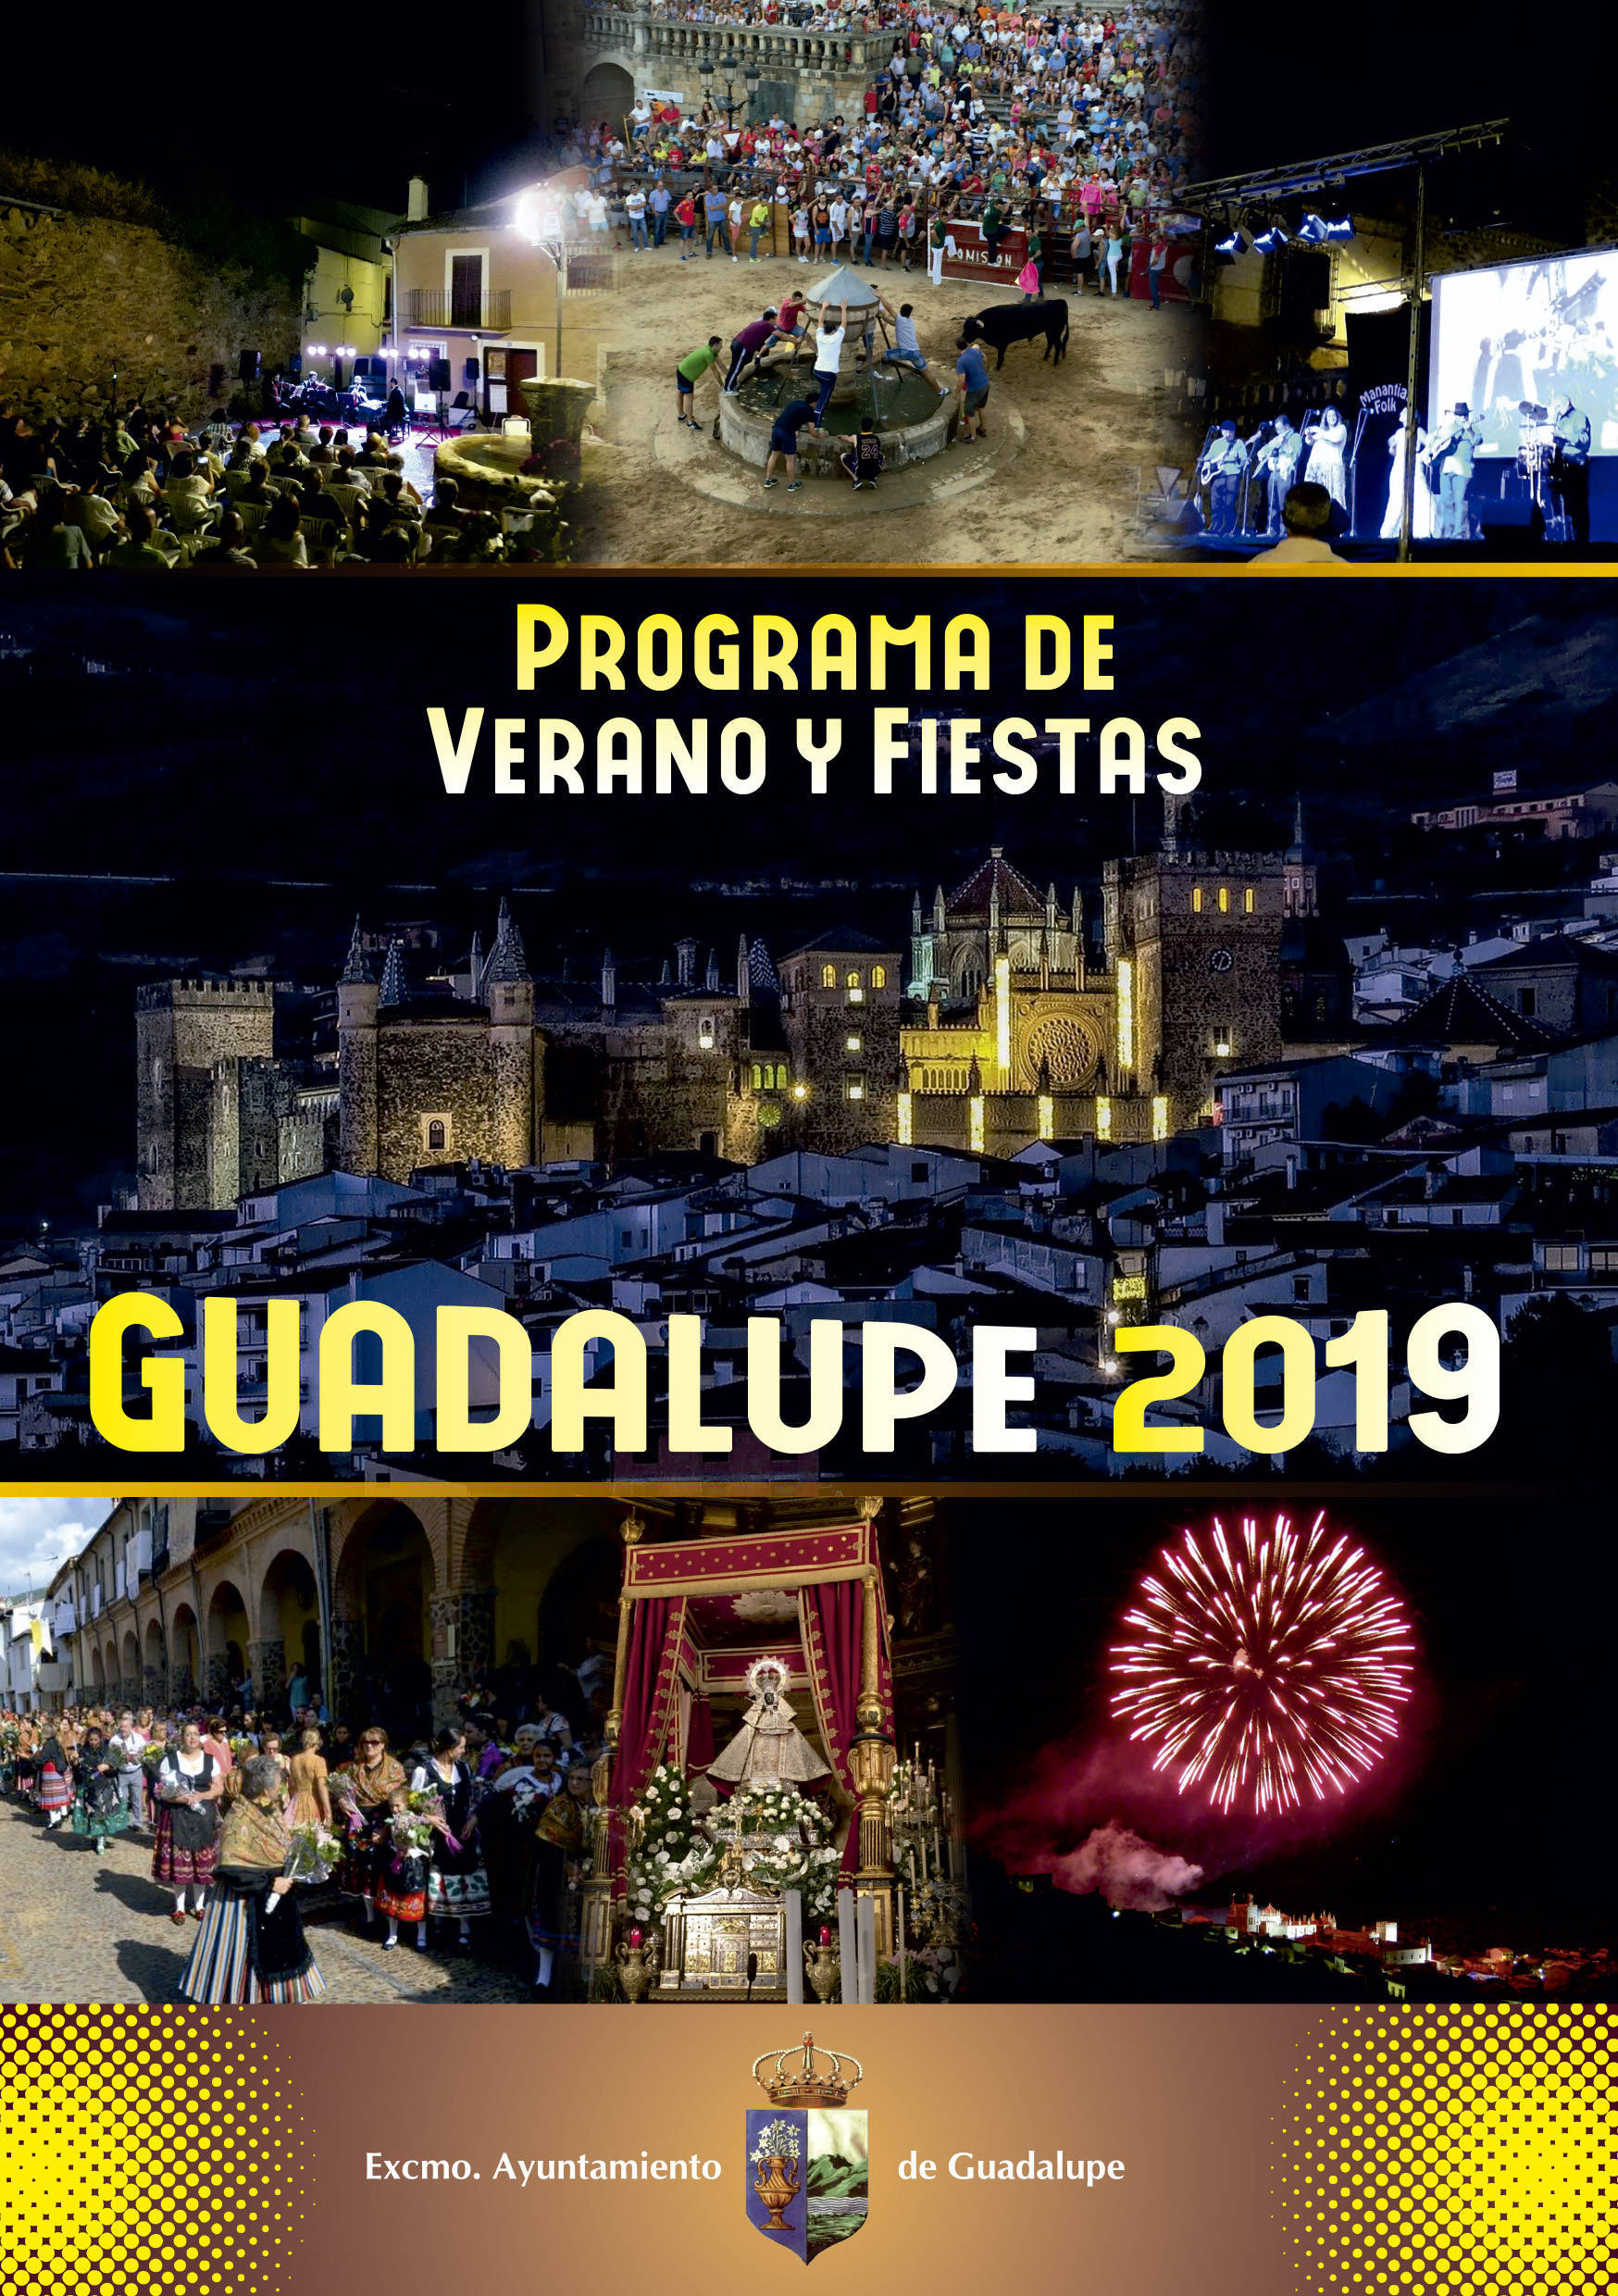 Programa de verano y fiestas 2019 - Guadalupe (Cáceres) 1